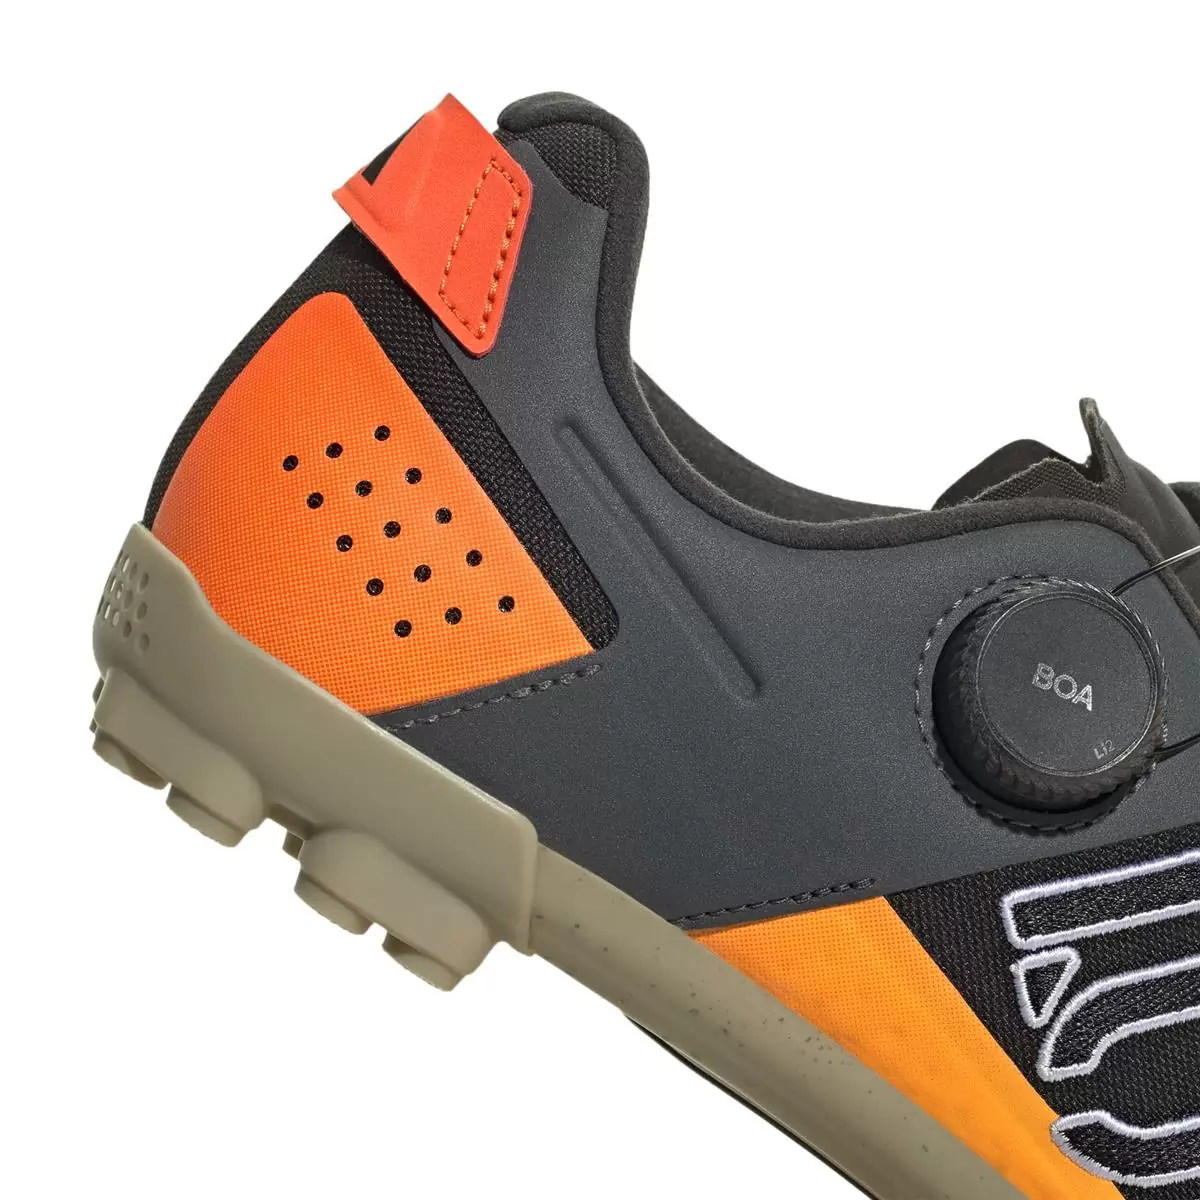 Clip 5.10 Kestrel Boa MTB Shoes Black/Orange Size 40 #7